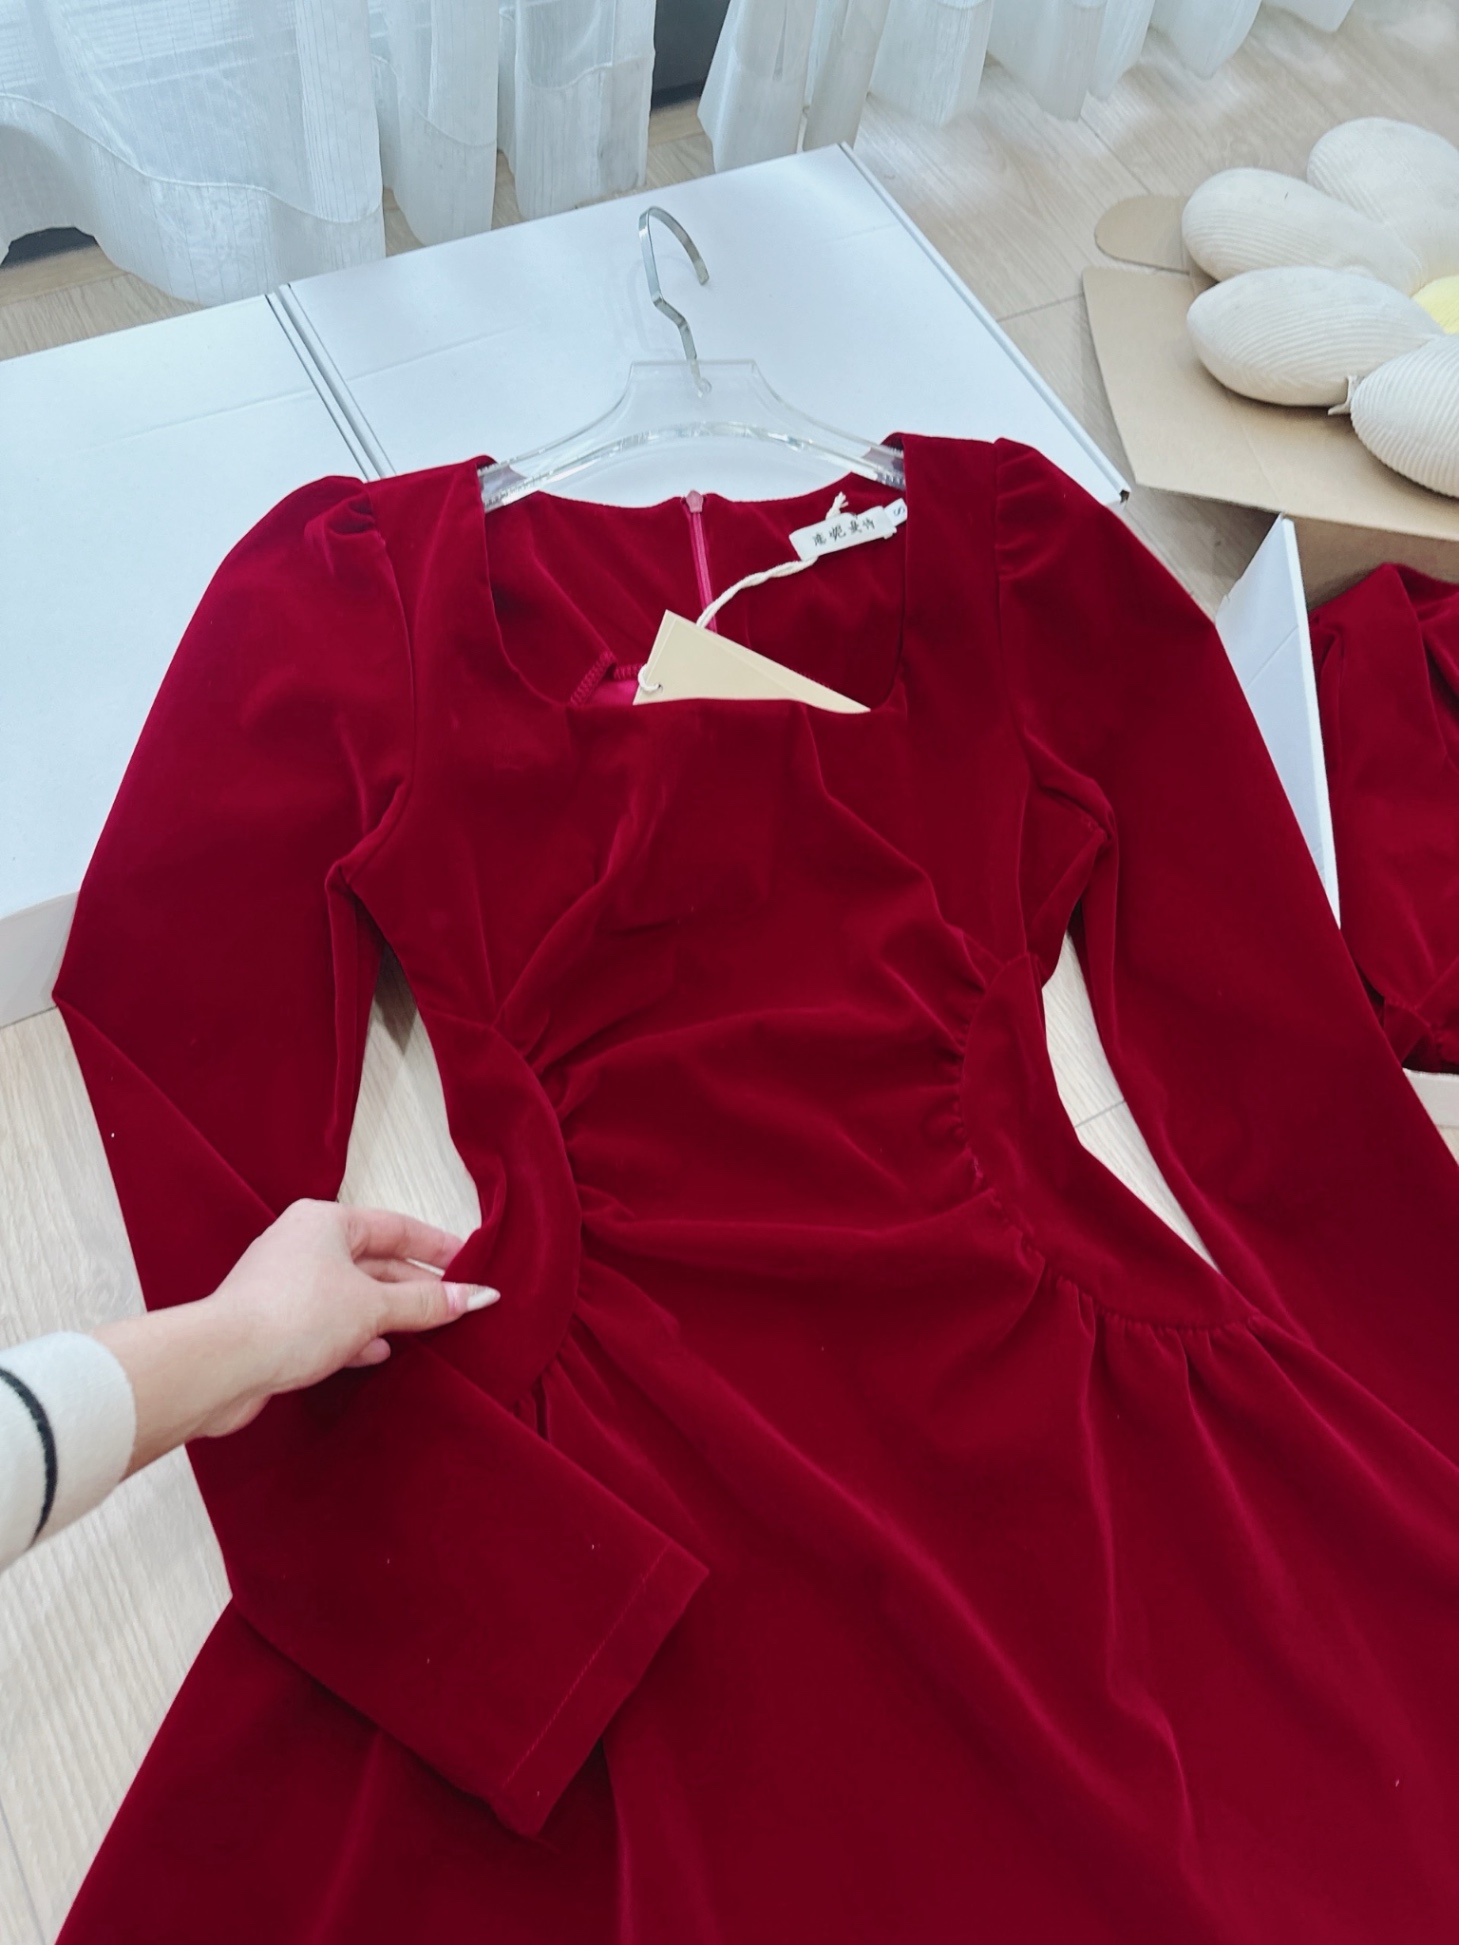 Váy xòe nhung đỏ cổ leo - 3532